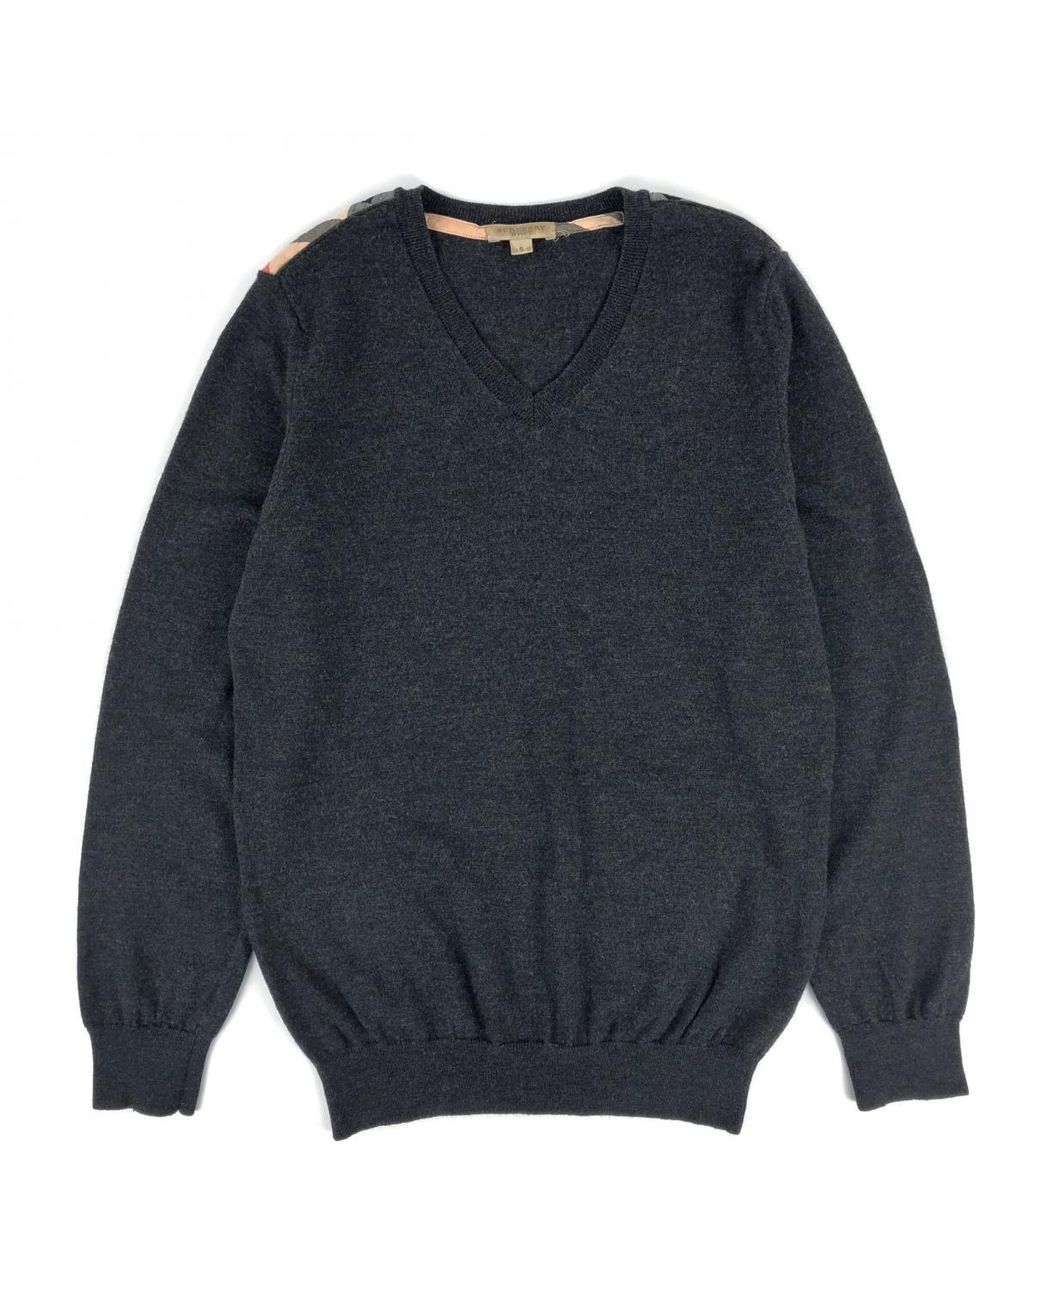 Burberry Grey Wool Knitwear & Sweatshirts in Gray for Men - Lyst